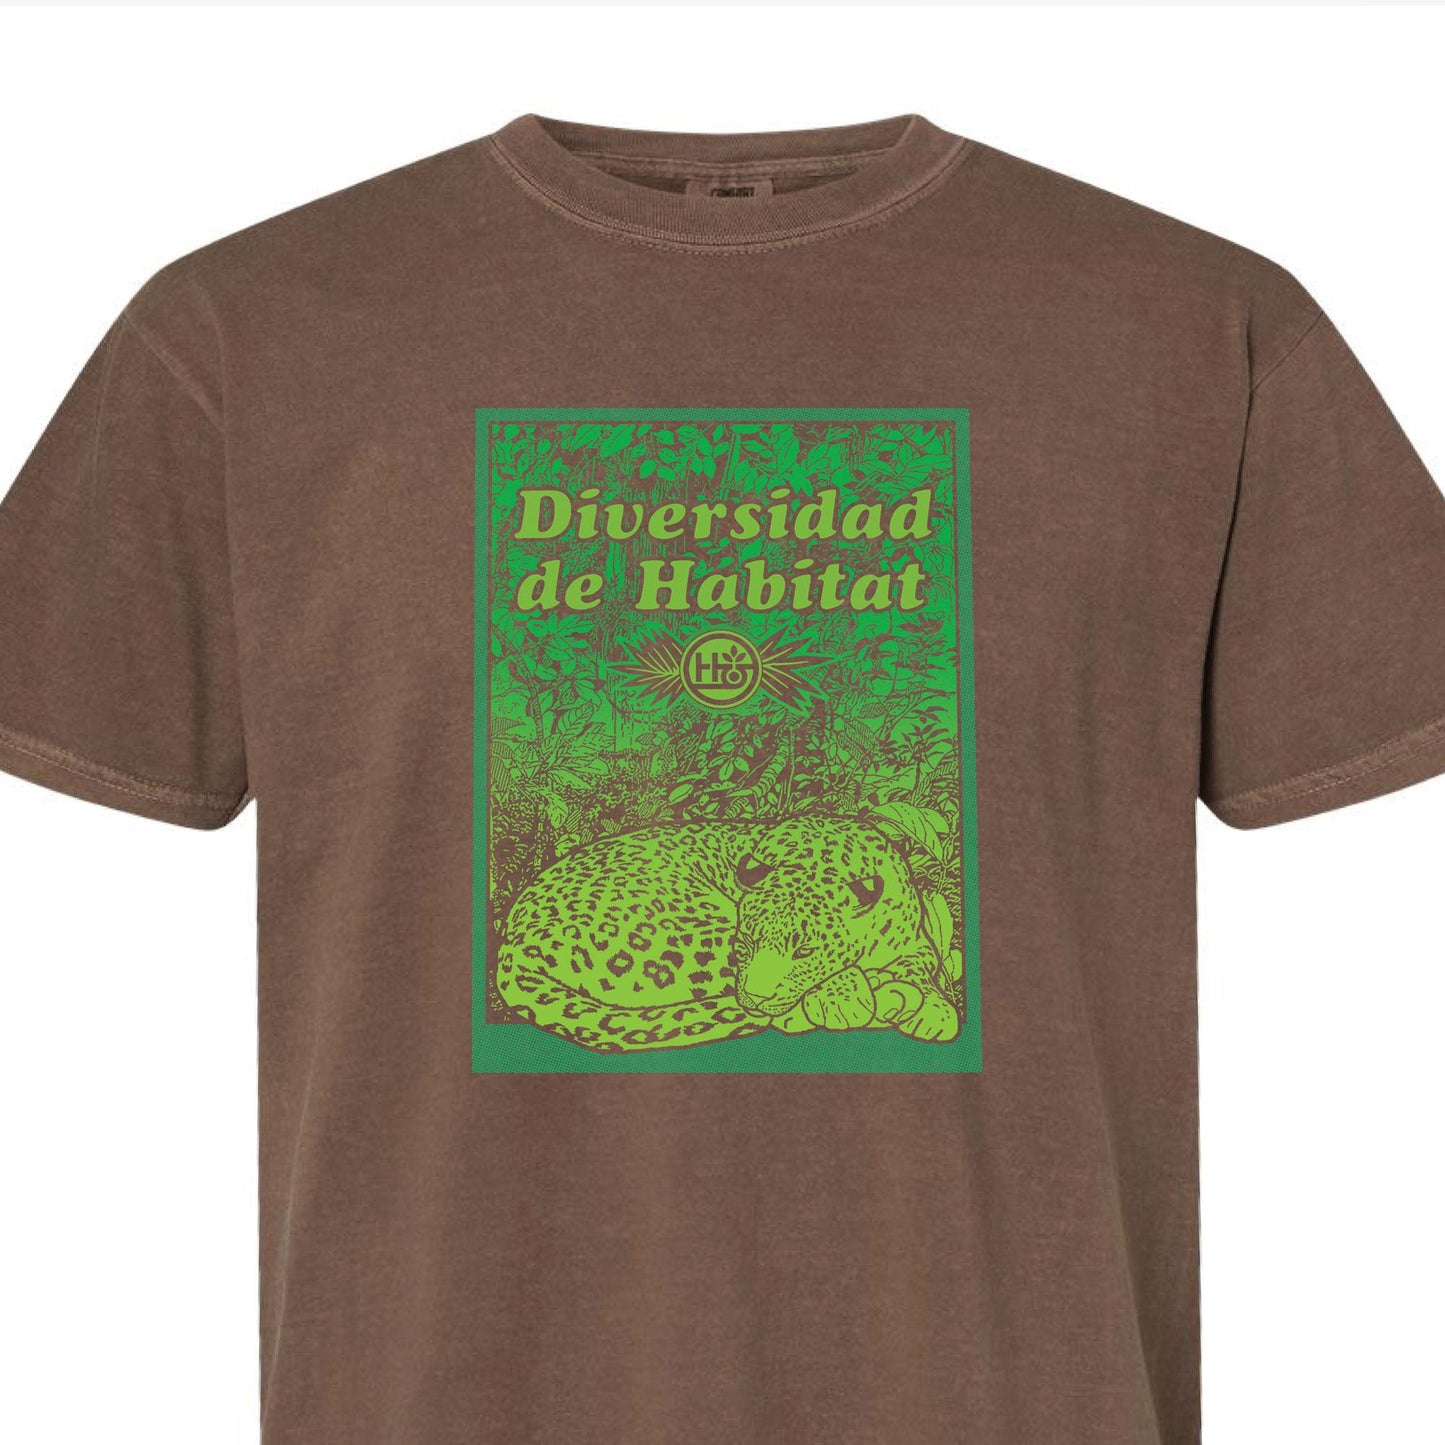 Diversidad de Habitat T-Shirt